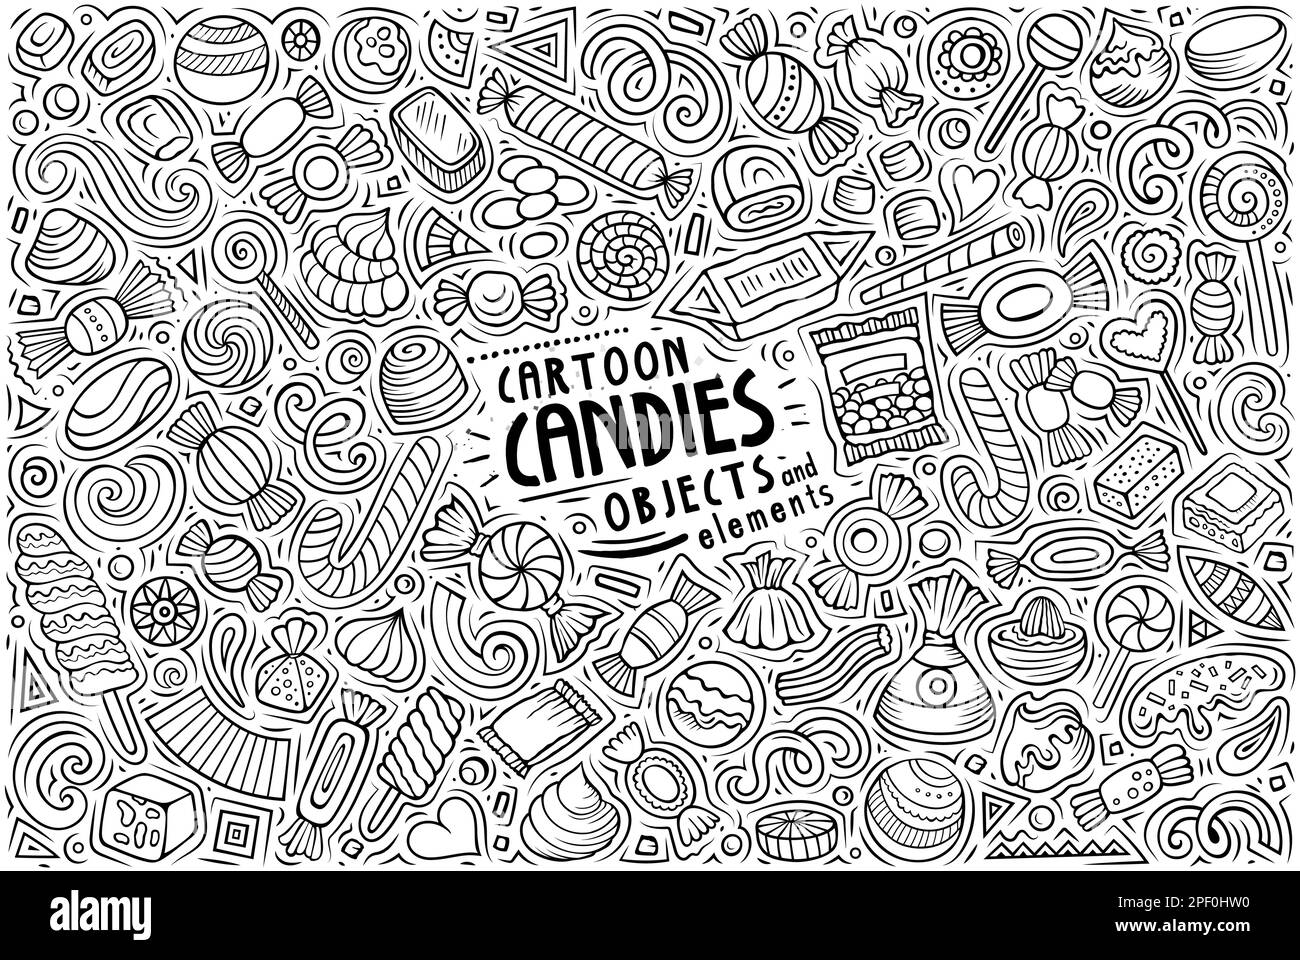 Strichgrafiken-Vektor-Zeichentrickfilm Set mit Candies-Themen, Objekten und Symbolen Stock Vektor